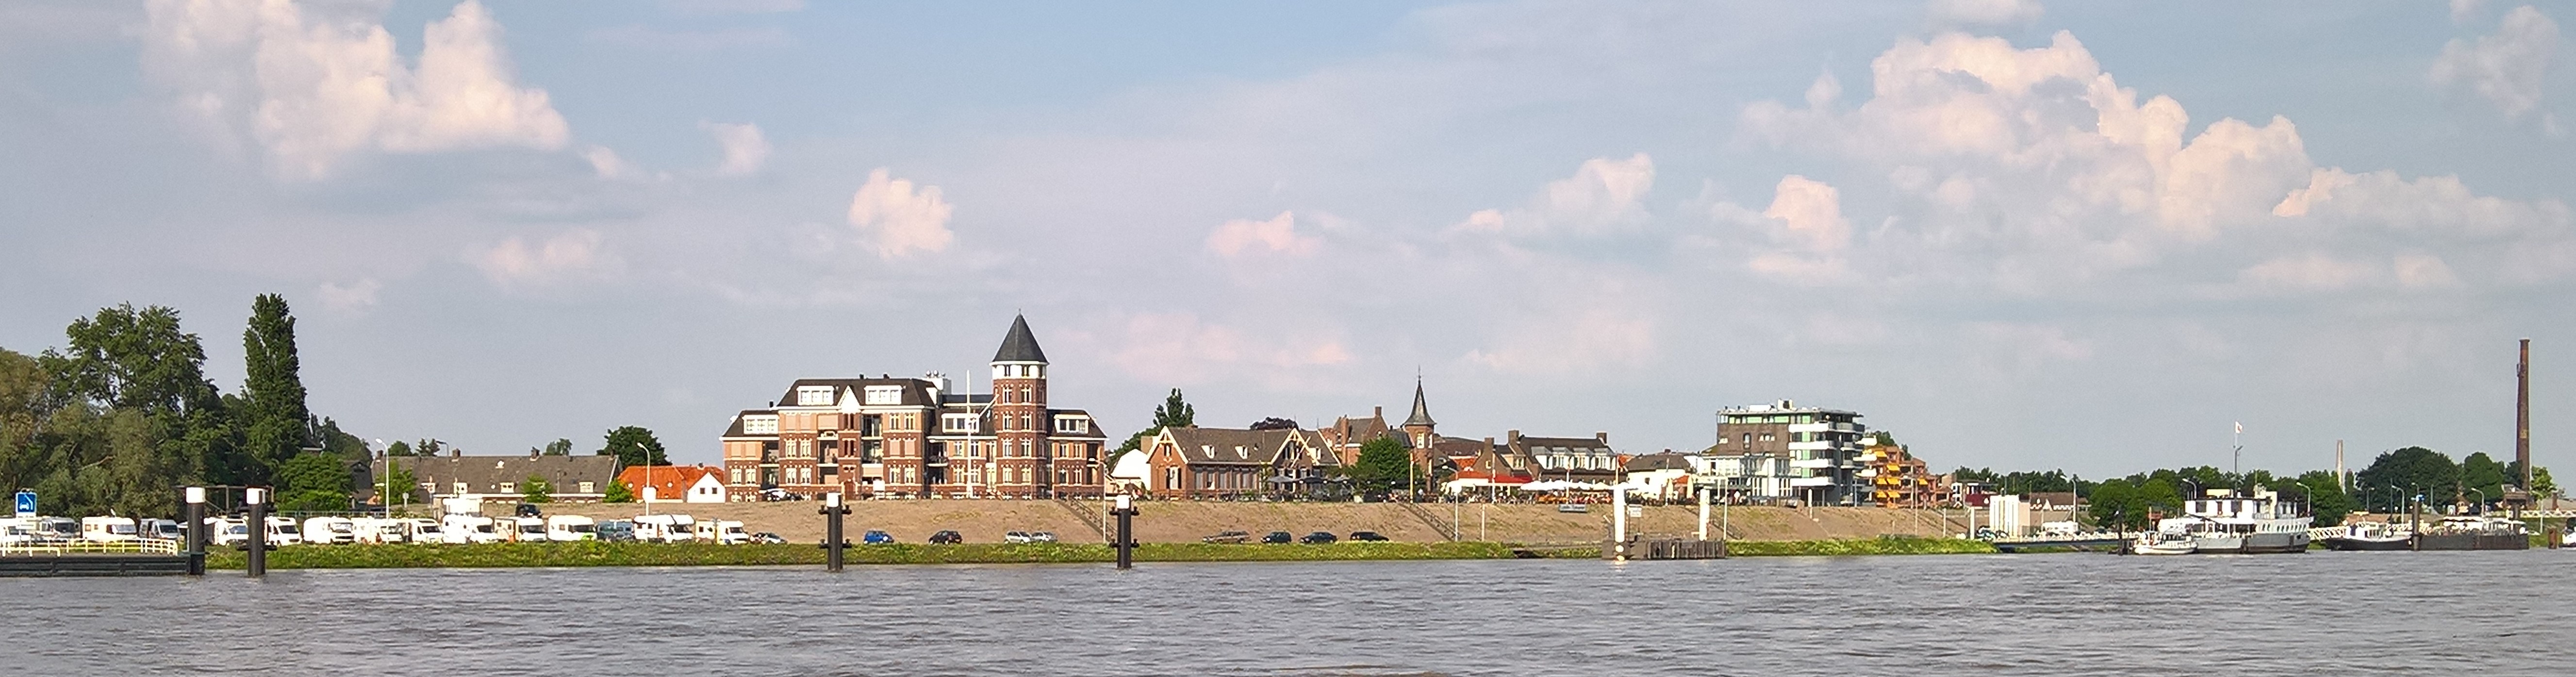 Tolkamer vanaf de Rijn